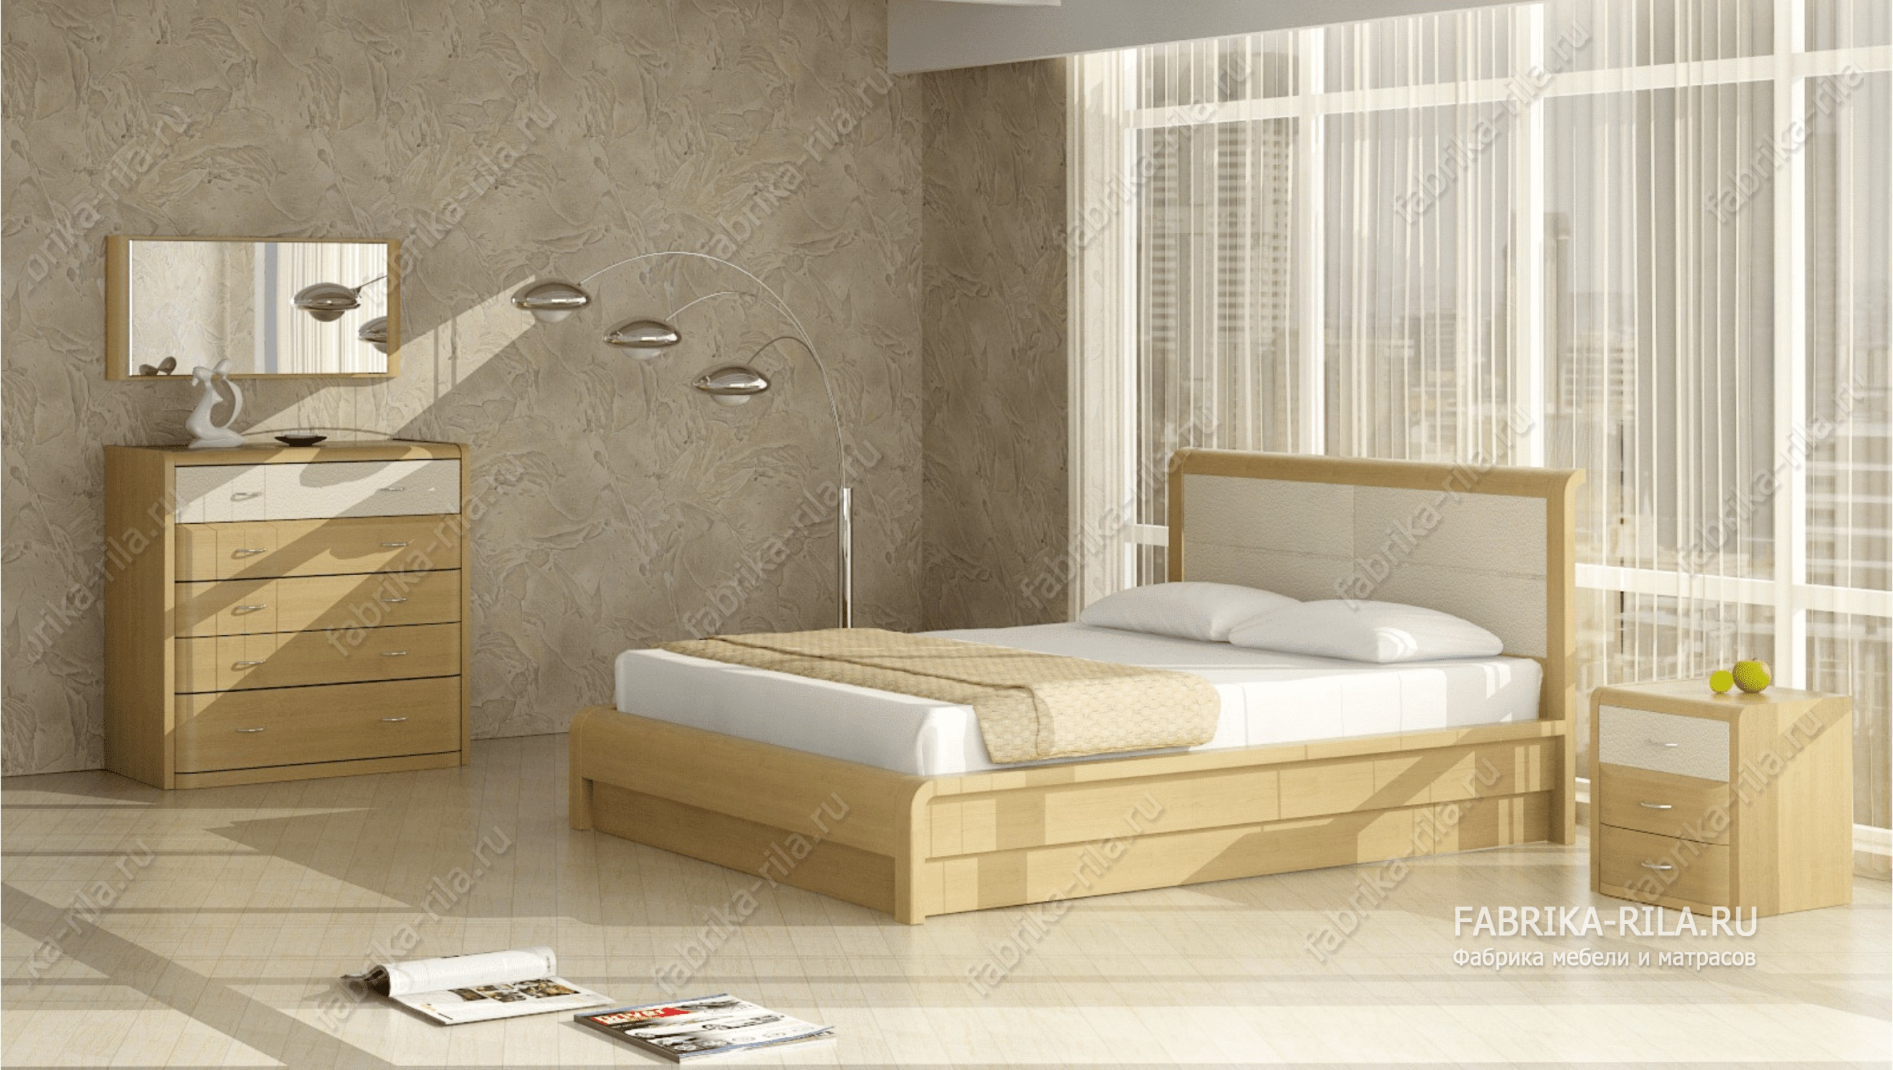 Кровать Arikama 1 — 160x200 см. из сосны